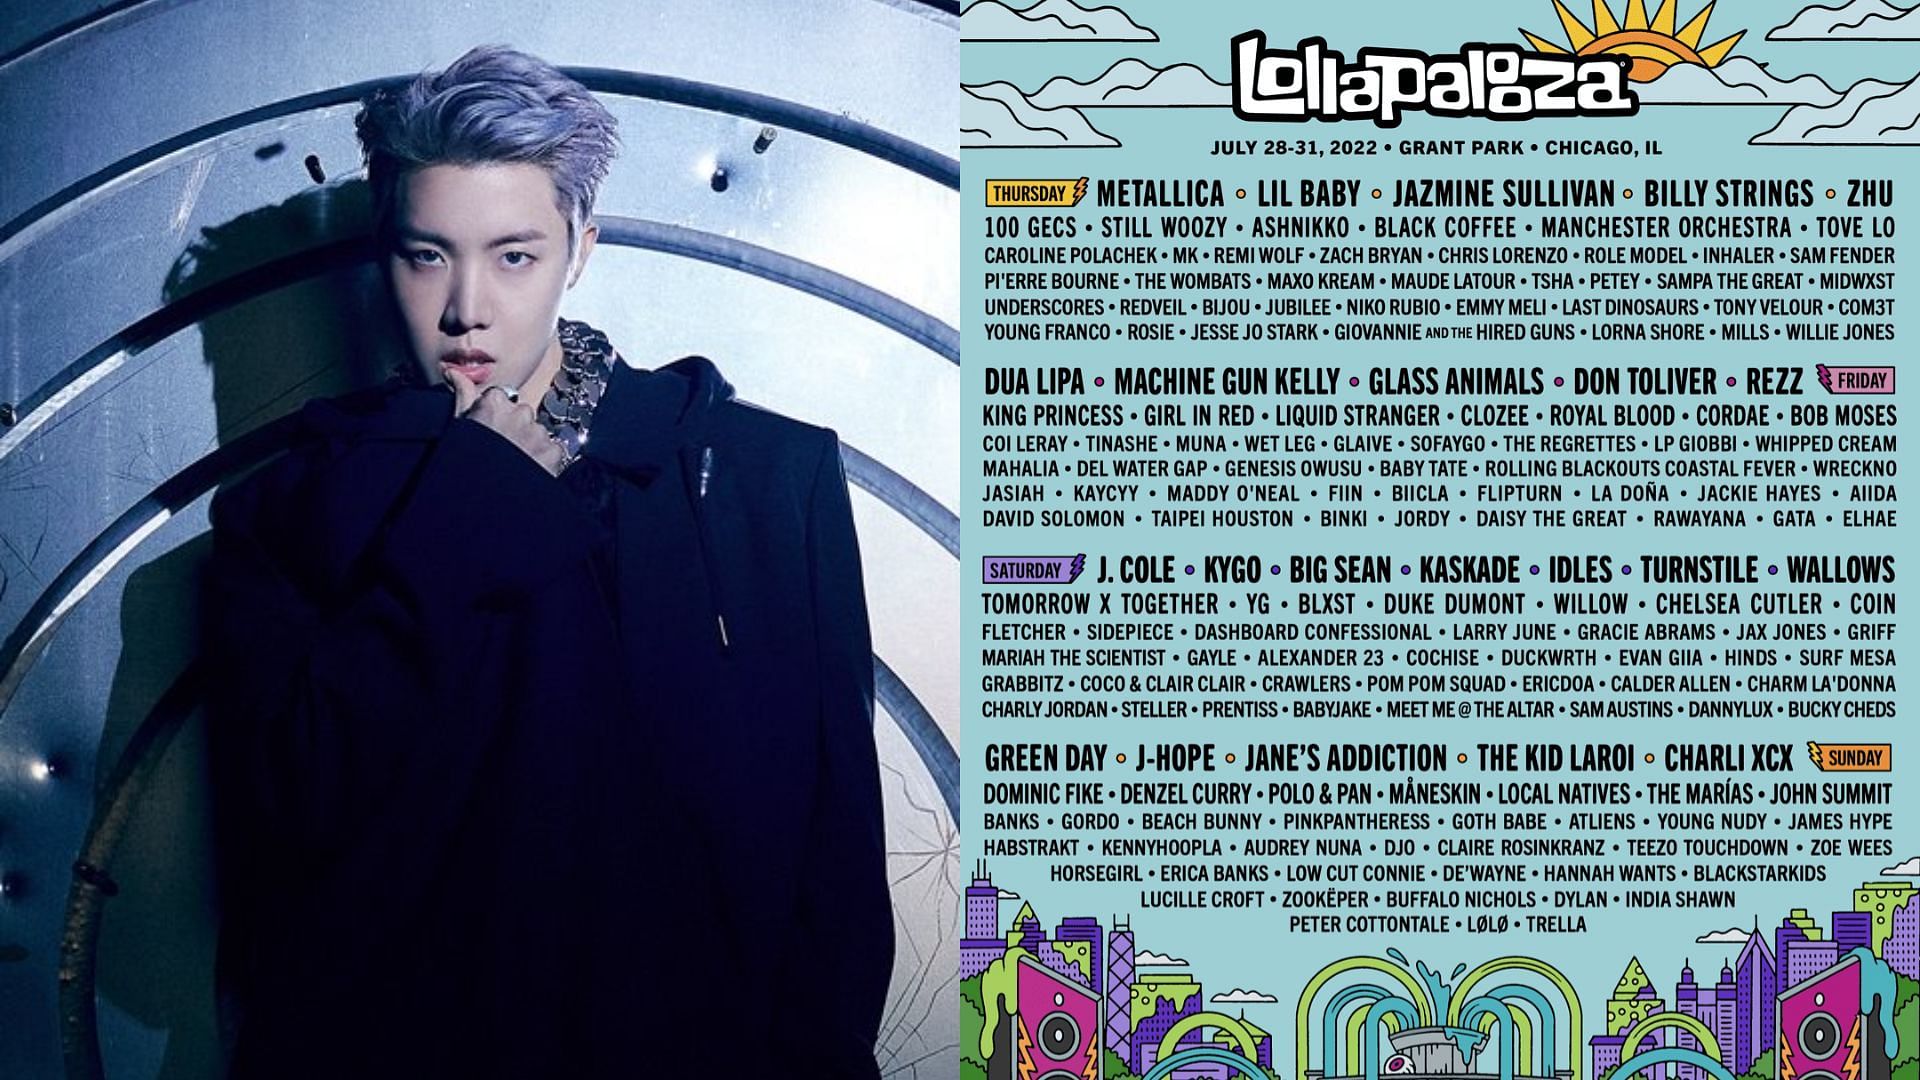 BTS J-hope will headline Lollapalooza (Image via Instagram)